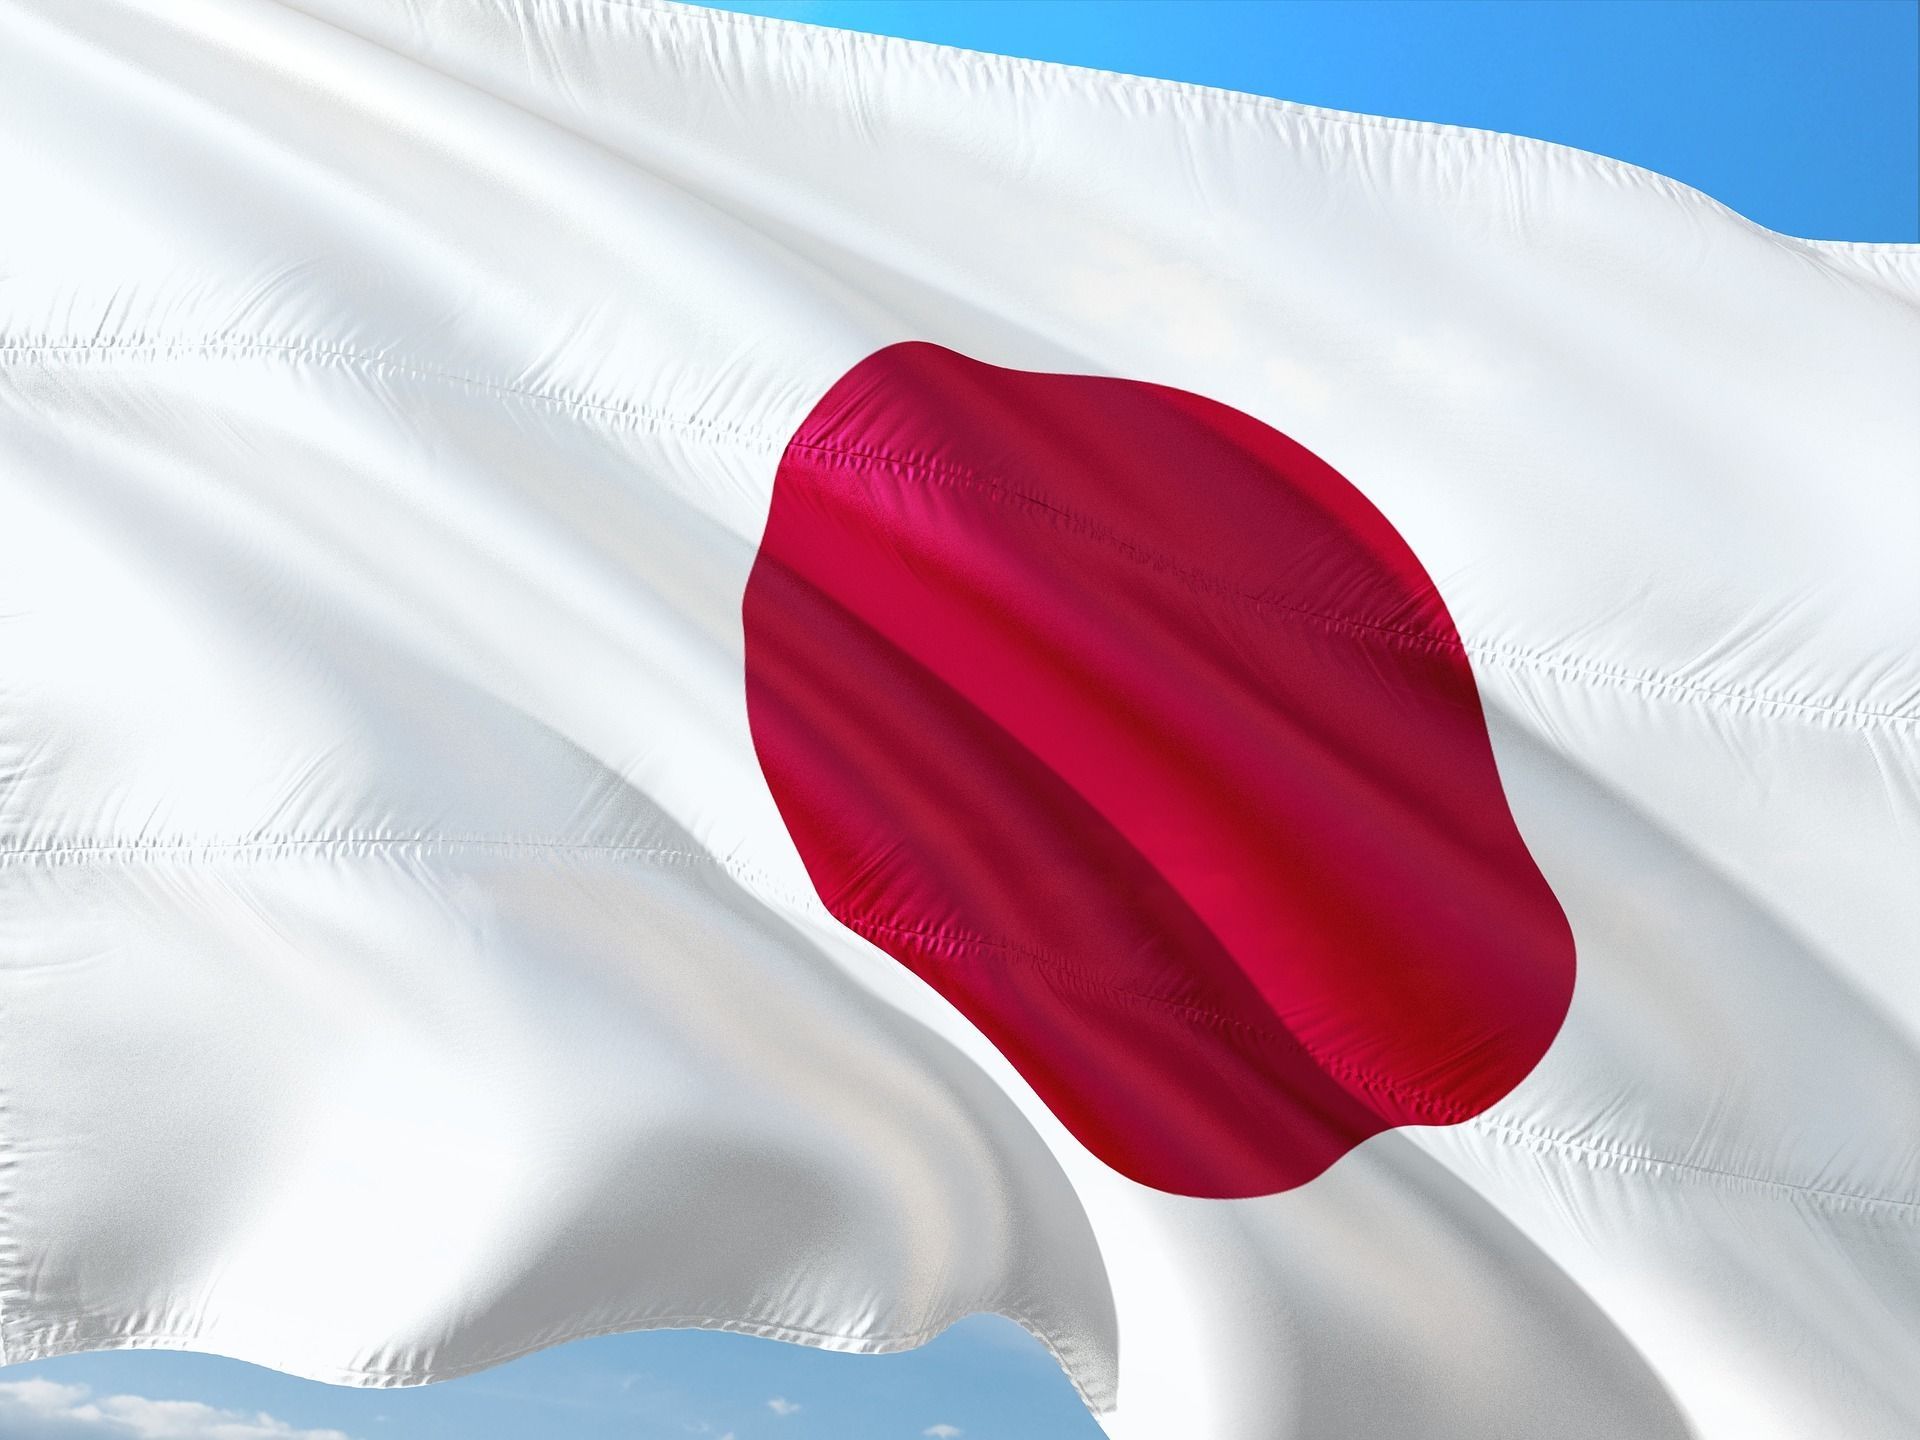 Studi Temukan Tingkat Bunuh Diri di Jepang Melonjak ...